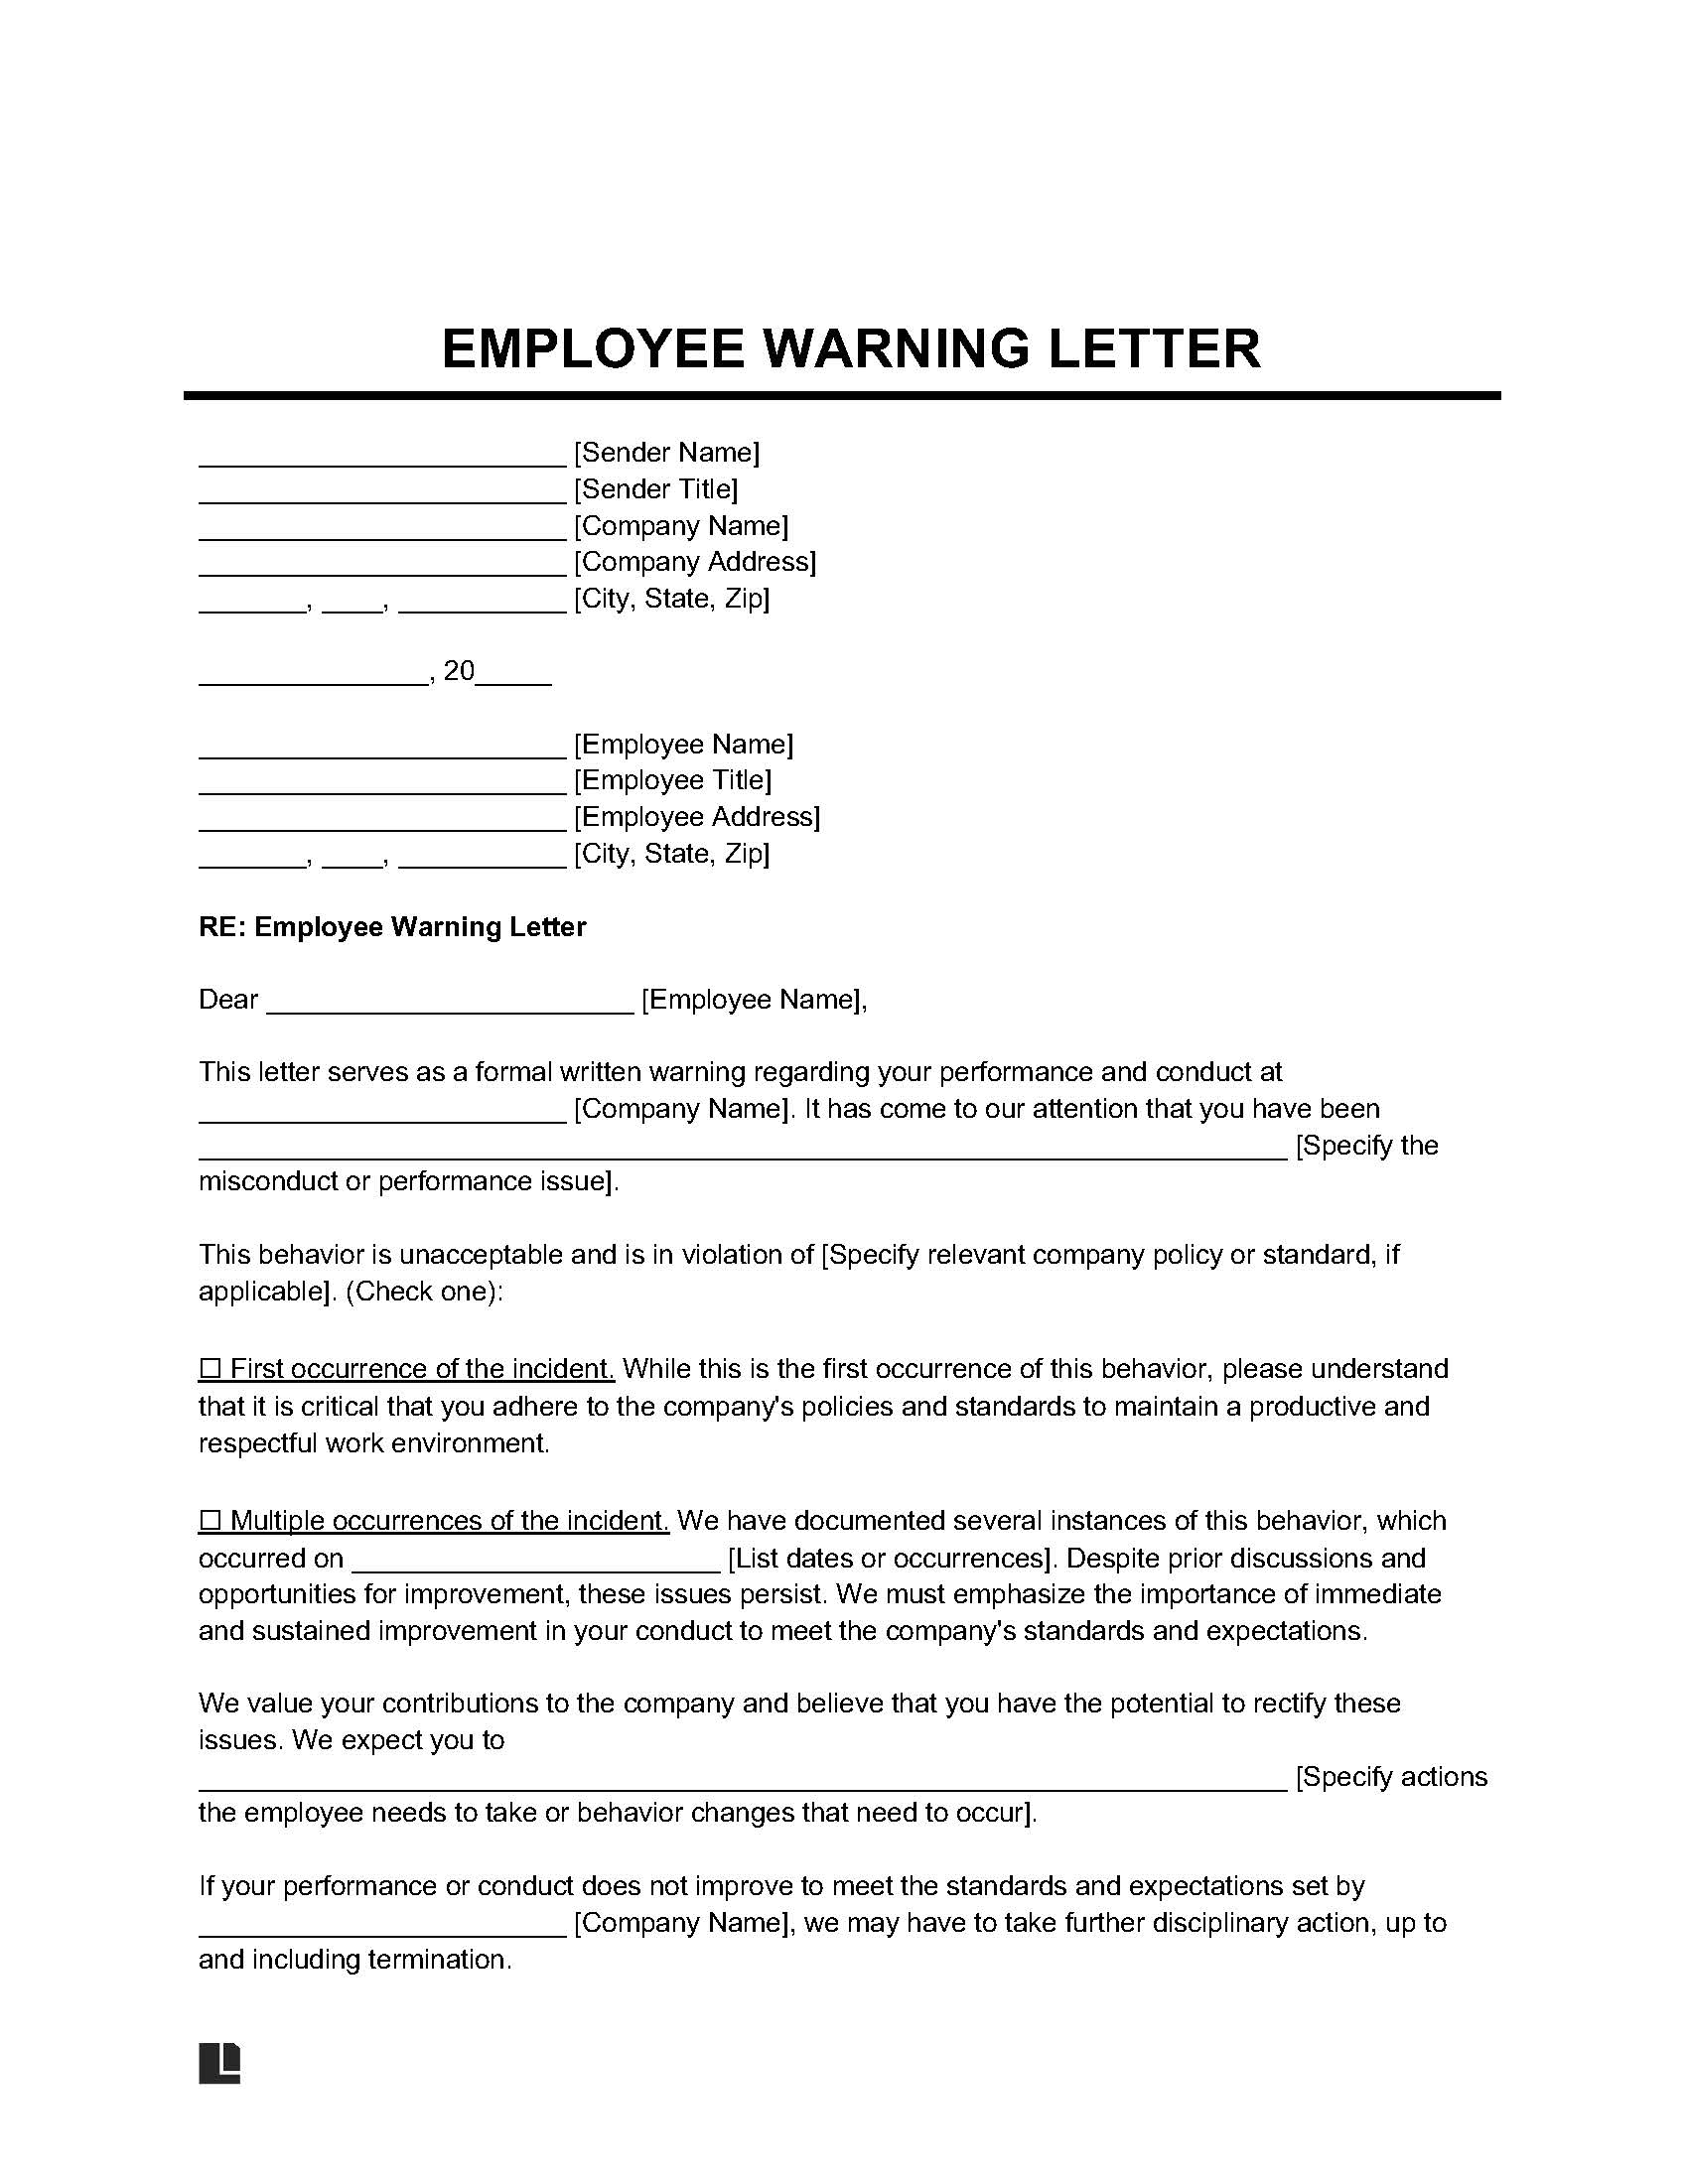 Employee Warning Letter sample